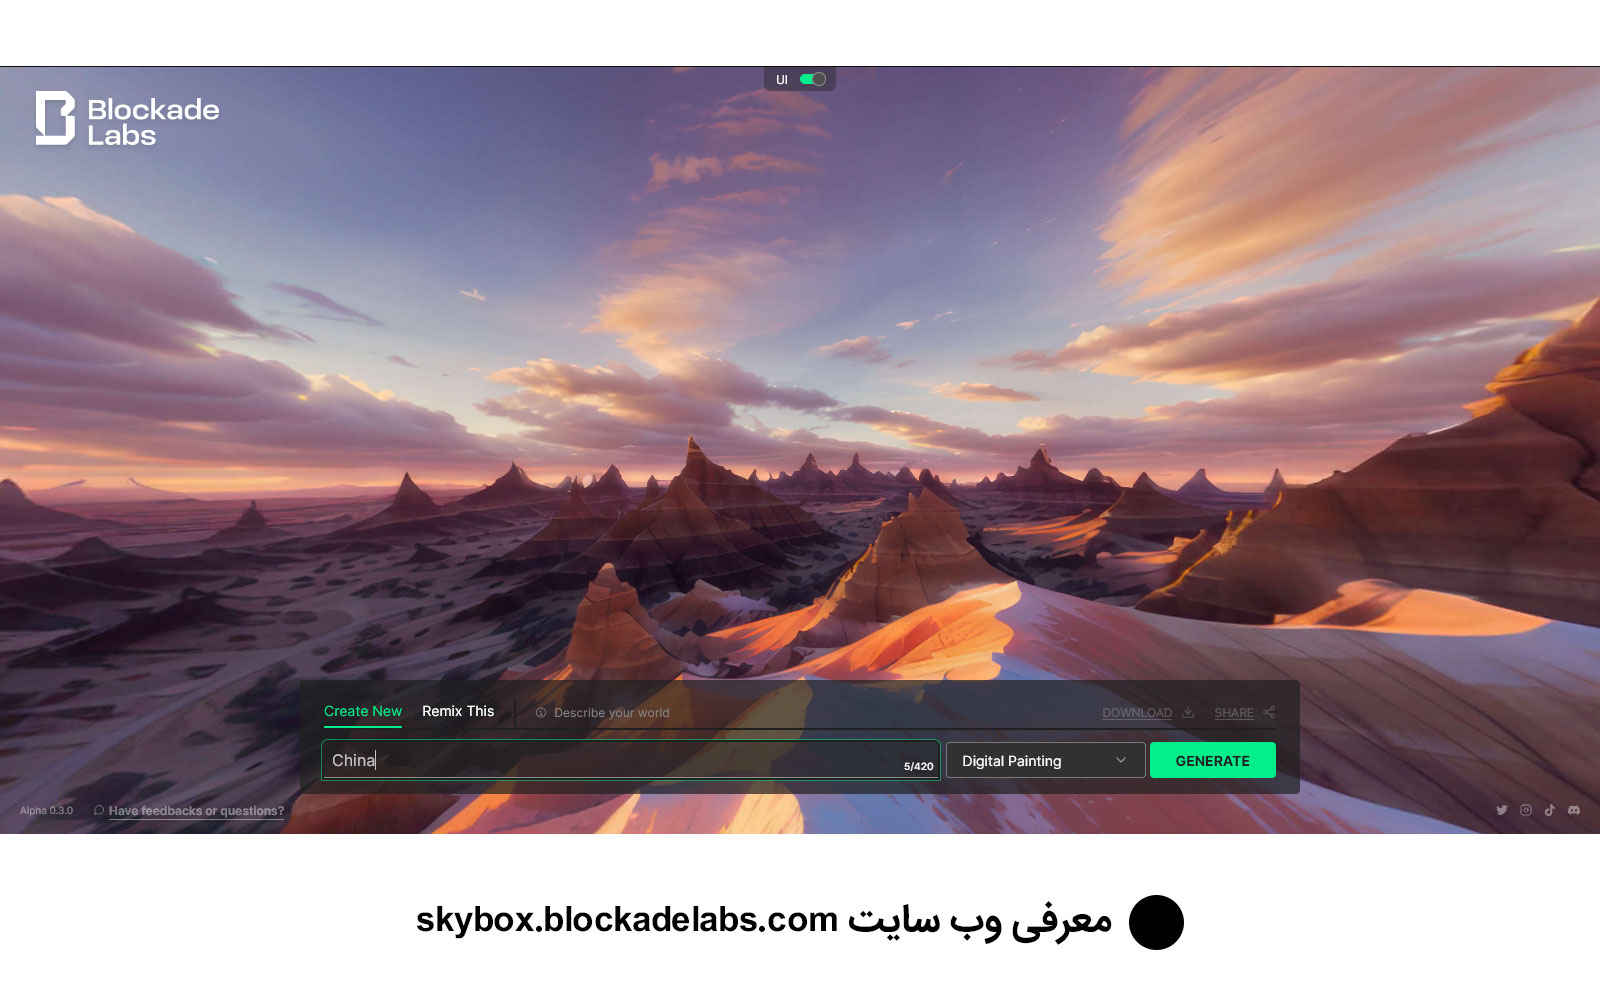 معرفی سایت skybox.blockadelabs.com